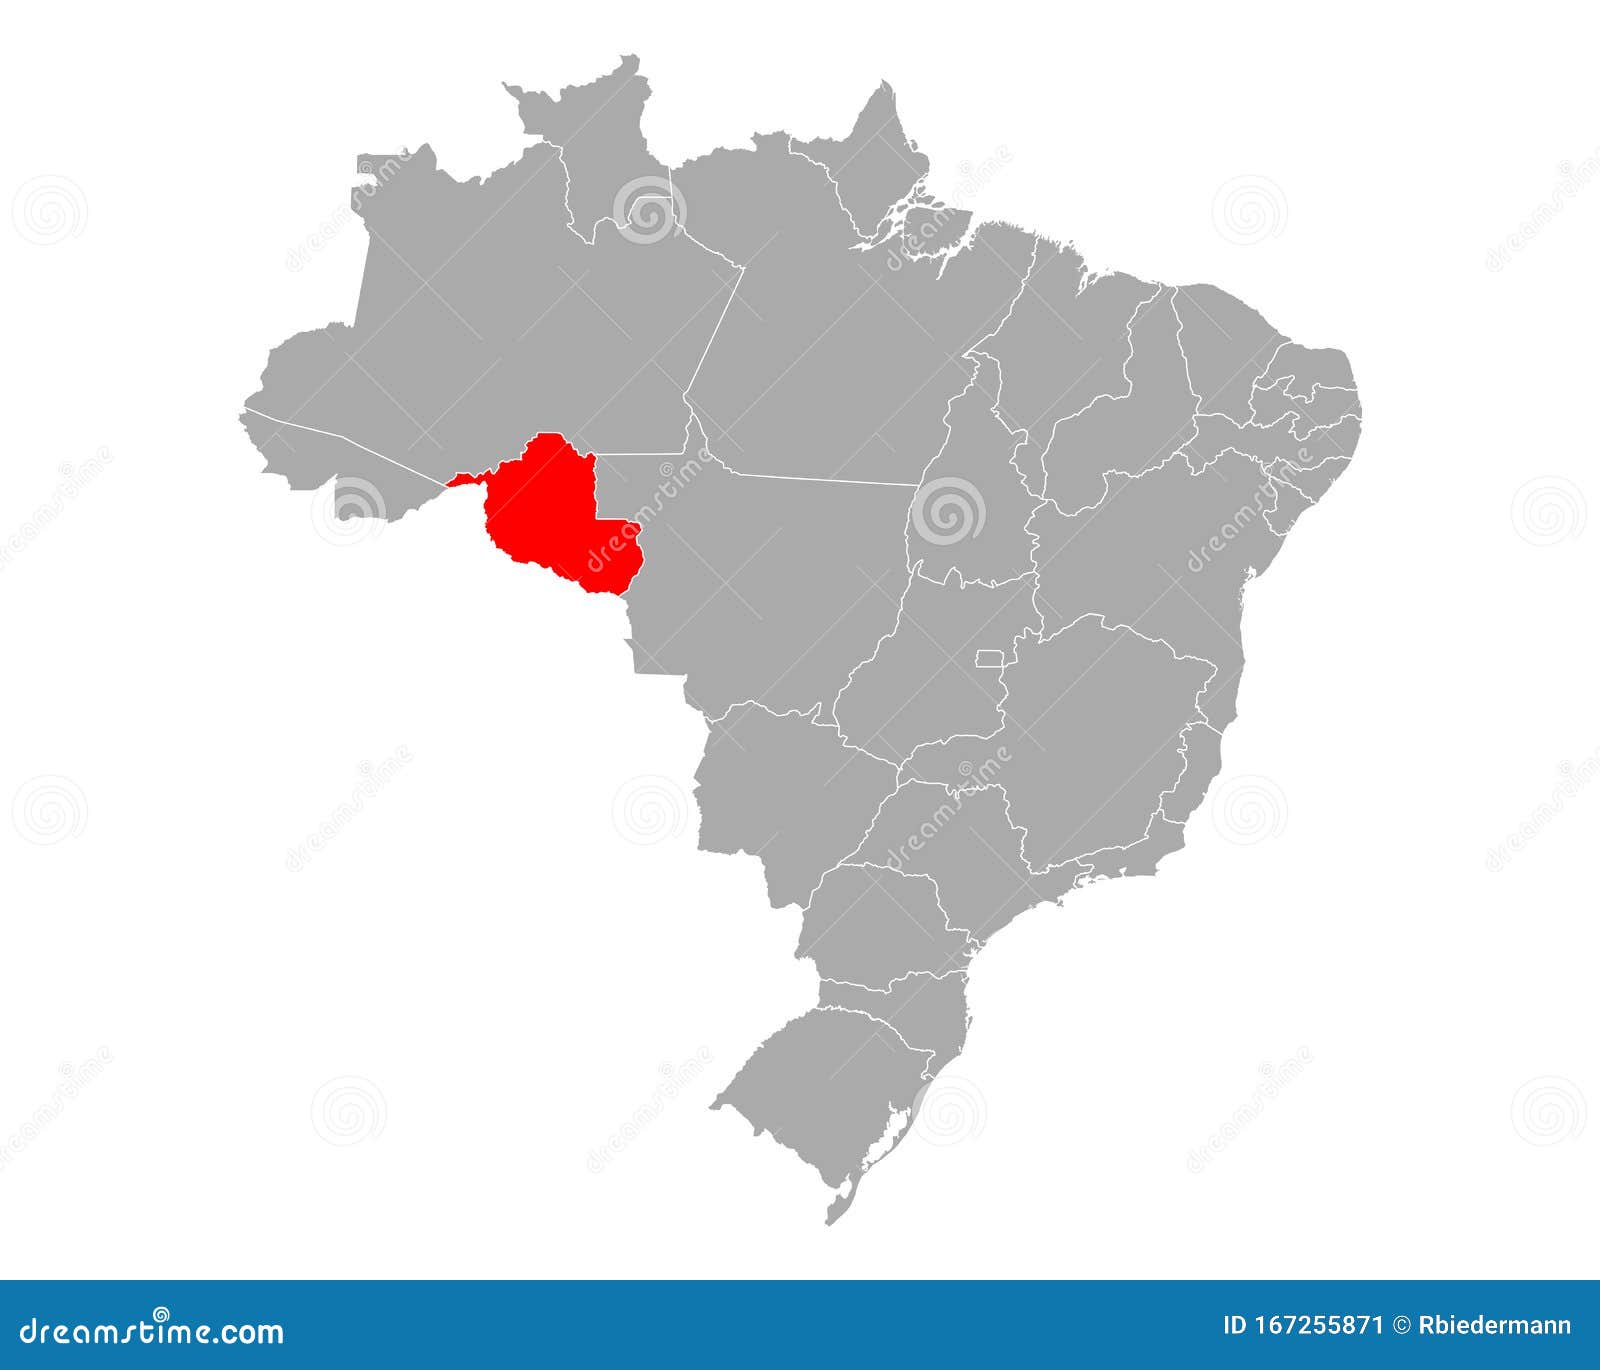 Rondônia, Brazil